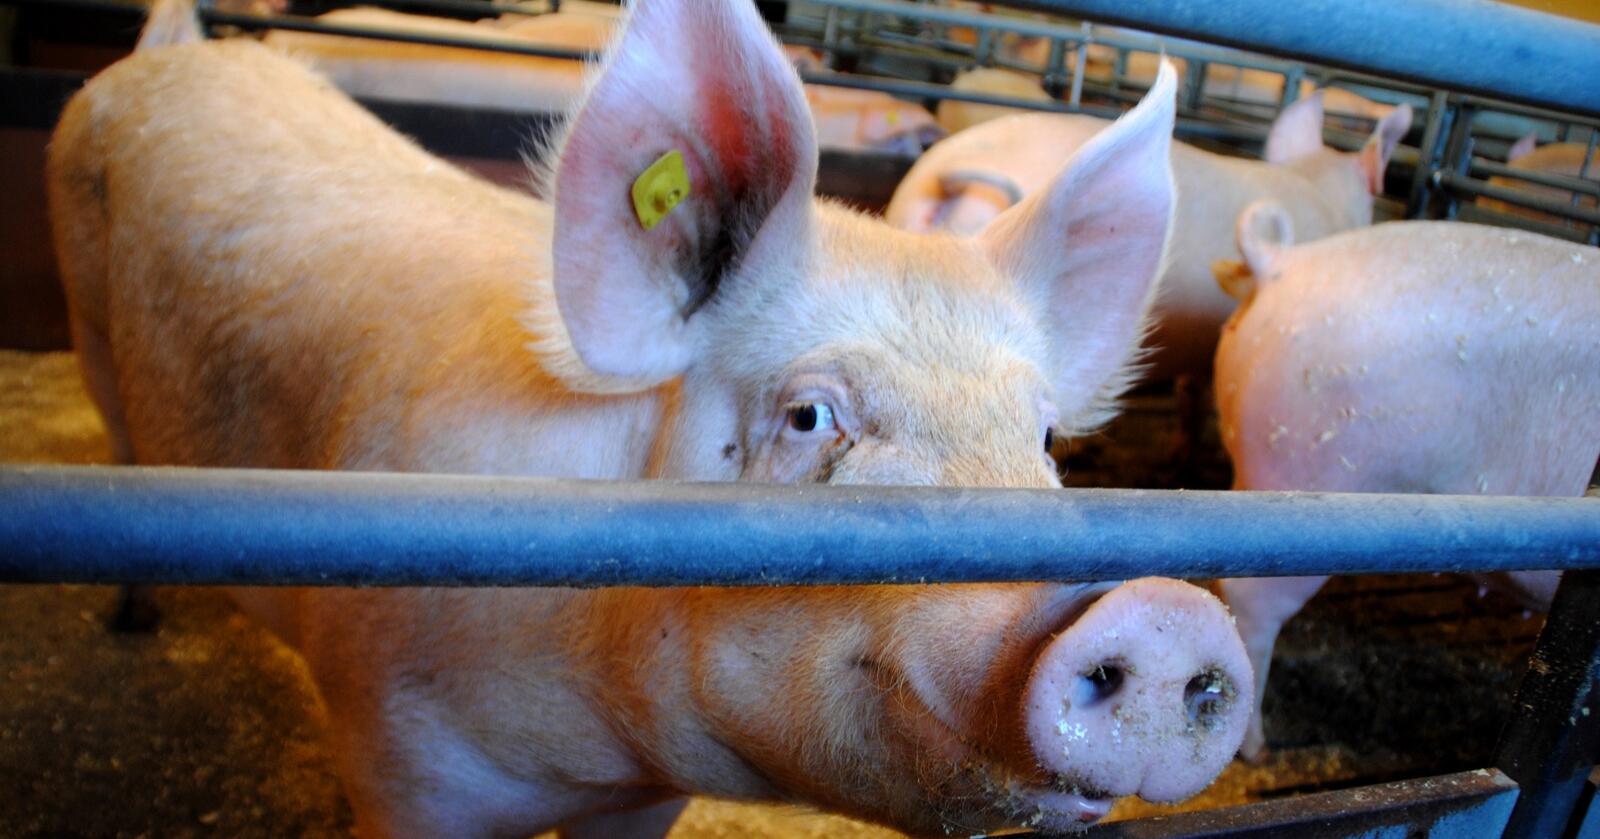 Kan skje alle: Dyretragedier kan skje i alle produksjoner. En havarikommisjon for svin er derfor ingen løsning, skriver innsenderne. Disse grisene har det bra og har ingenting med dyretragediene å gjøre. Illustrasjonsfoto: Lars Bilit Hagen